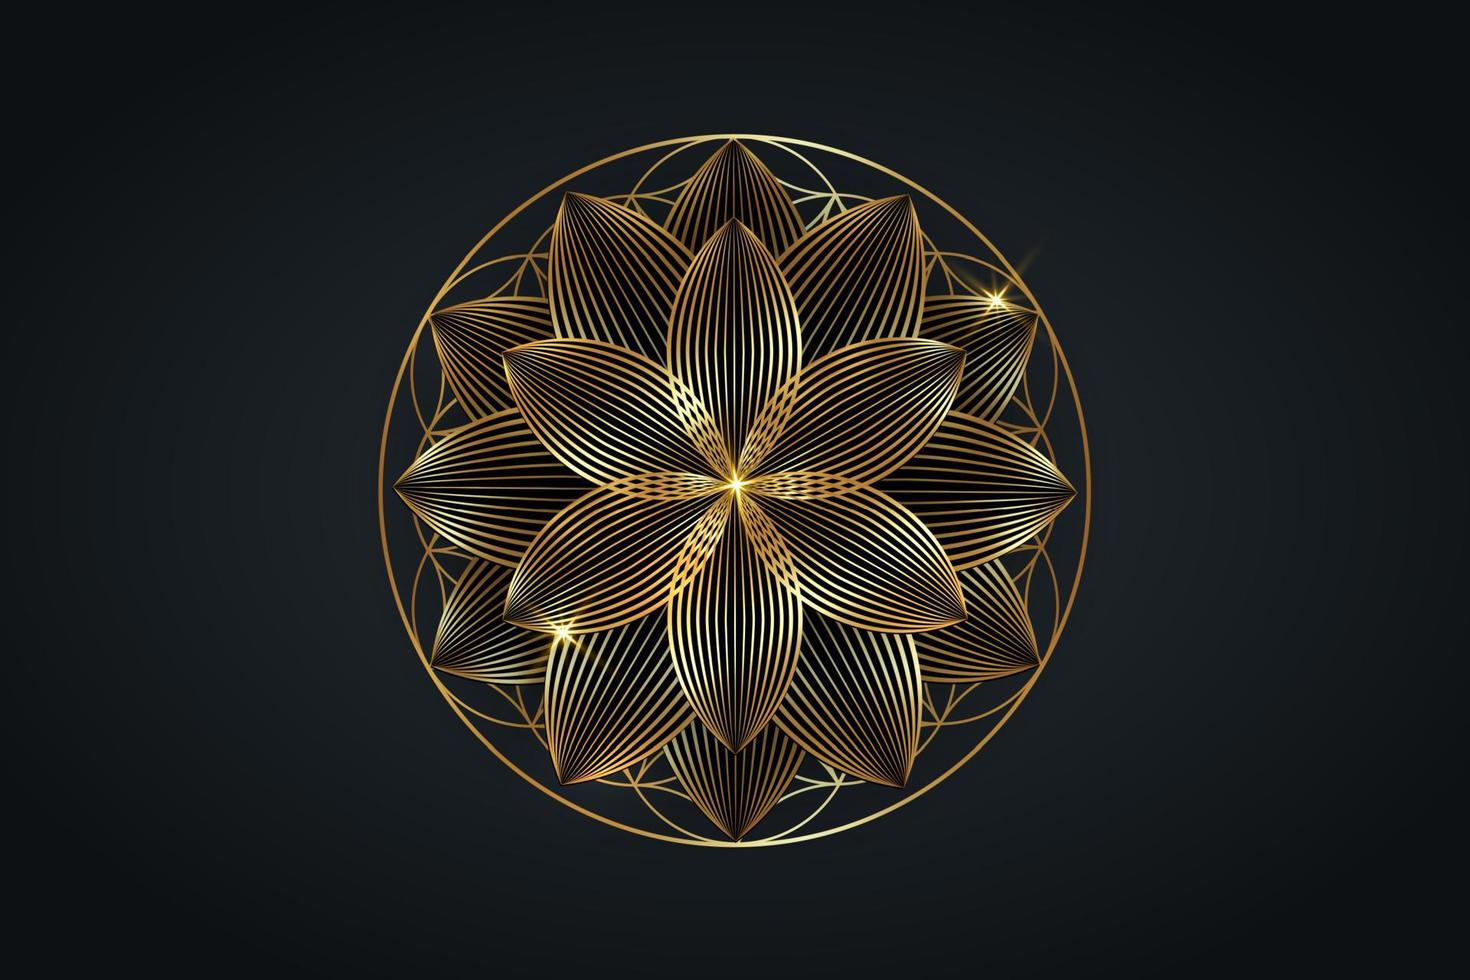 livets blomma, guld andlig mandala, helig geometri. ljus gyllene lotusymbol för harmoni och balans. mystisk talisman, lyxig rund vektor isolerad på svart bakgrund